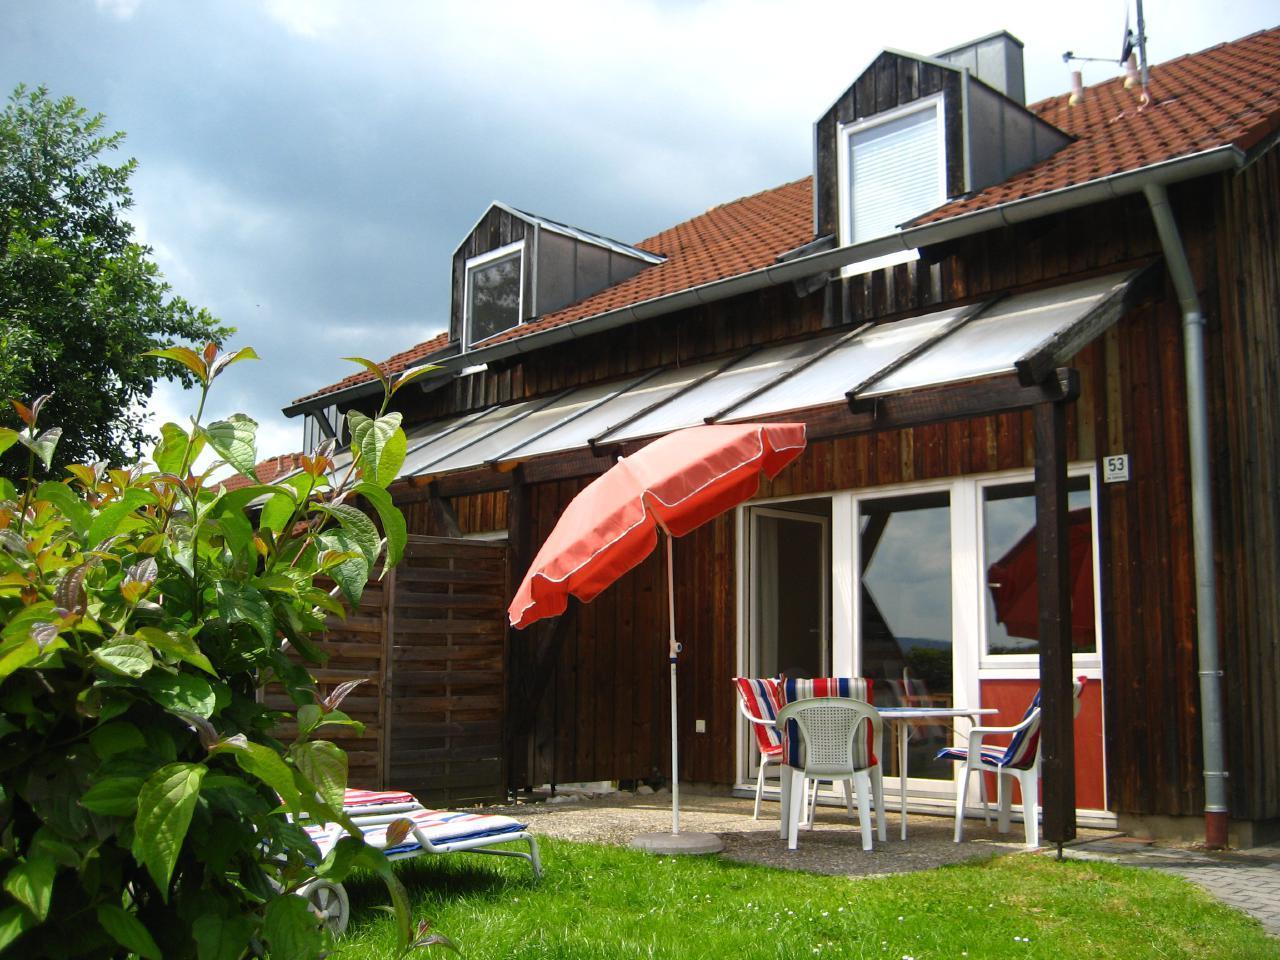 Ferienhaus in Zandt mit Grill, Garten und Terrasse  im Bayerischer Wald